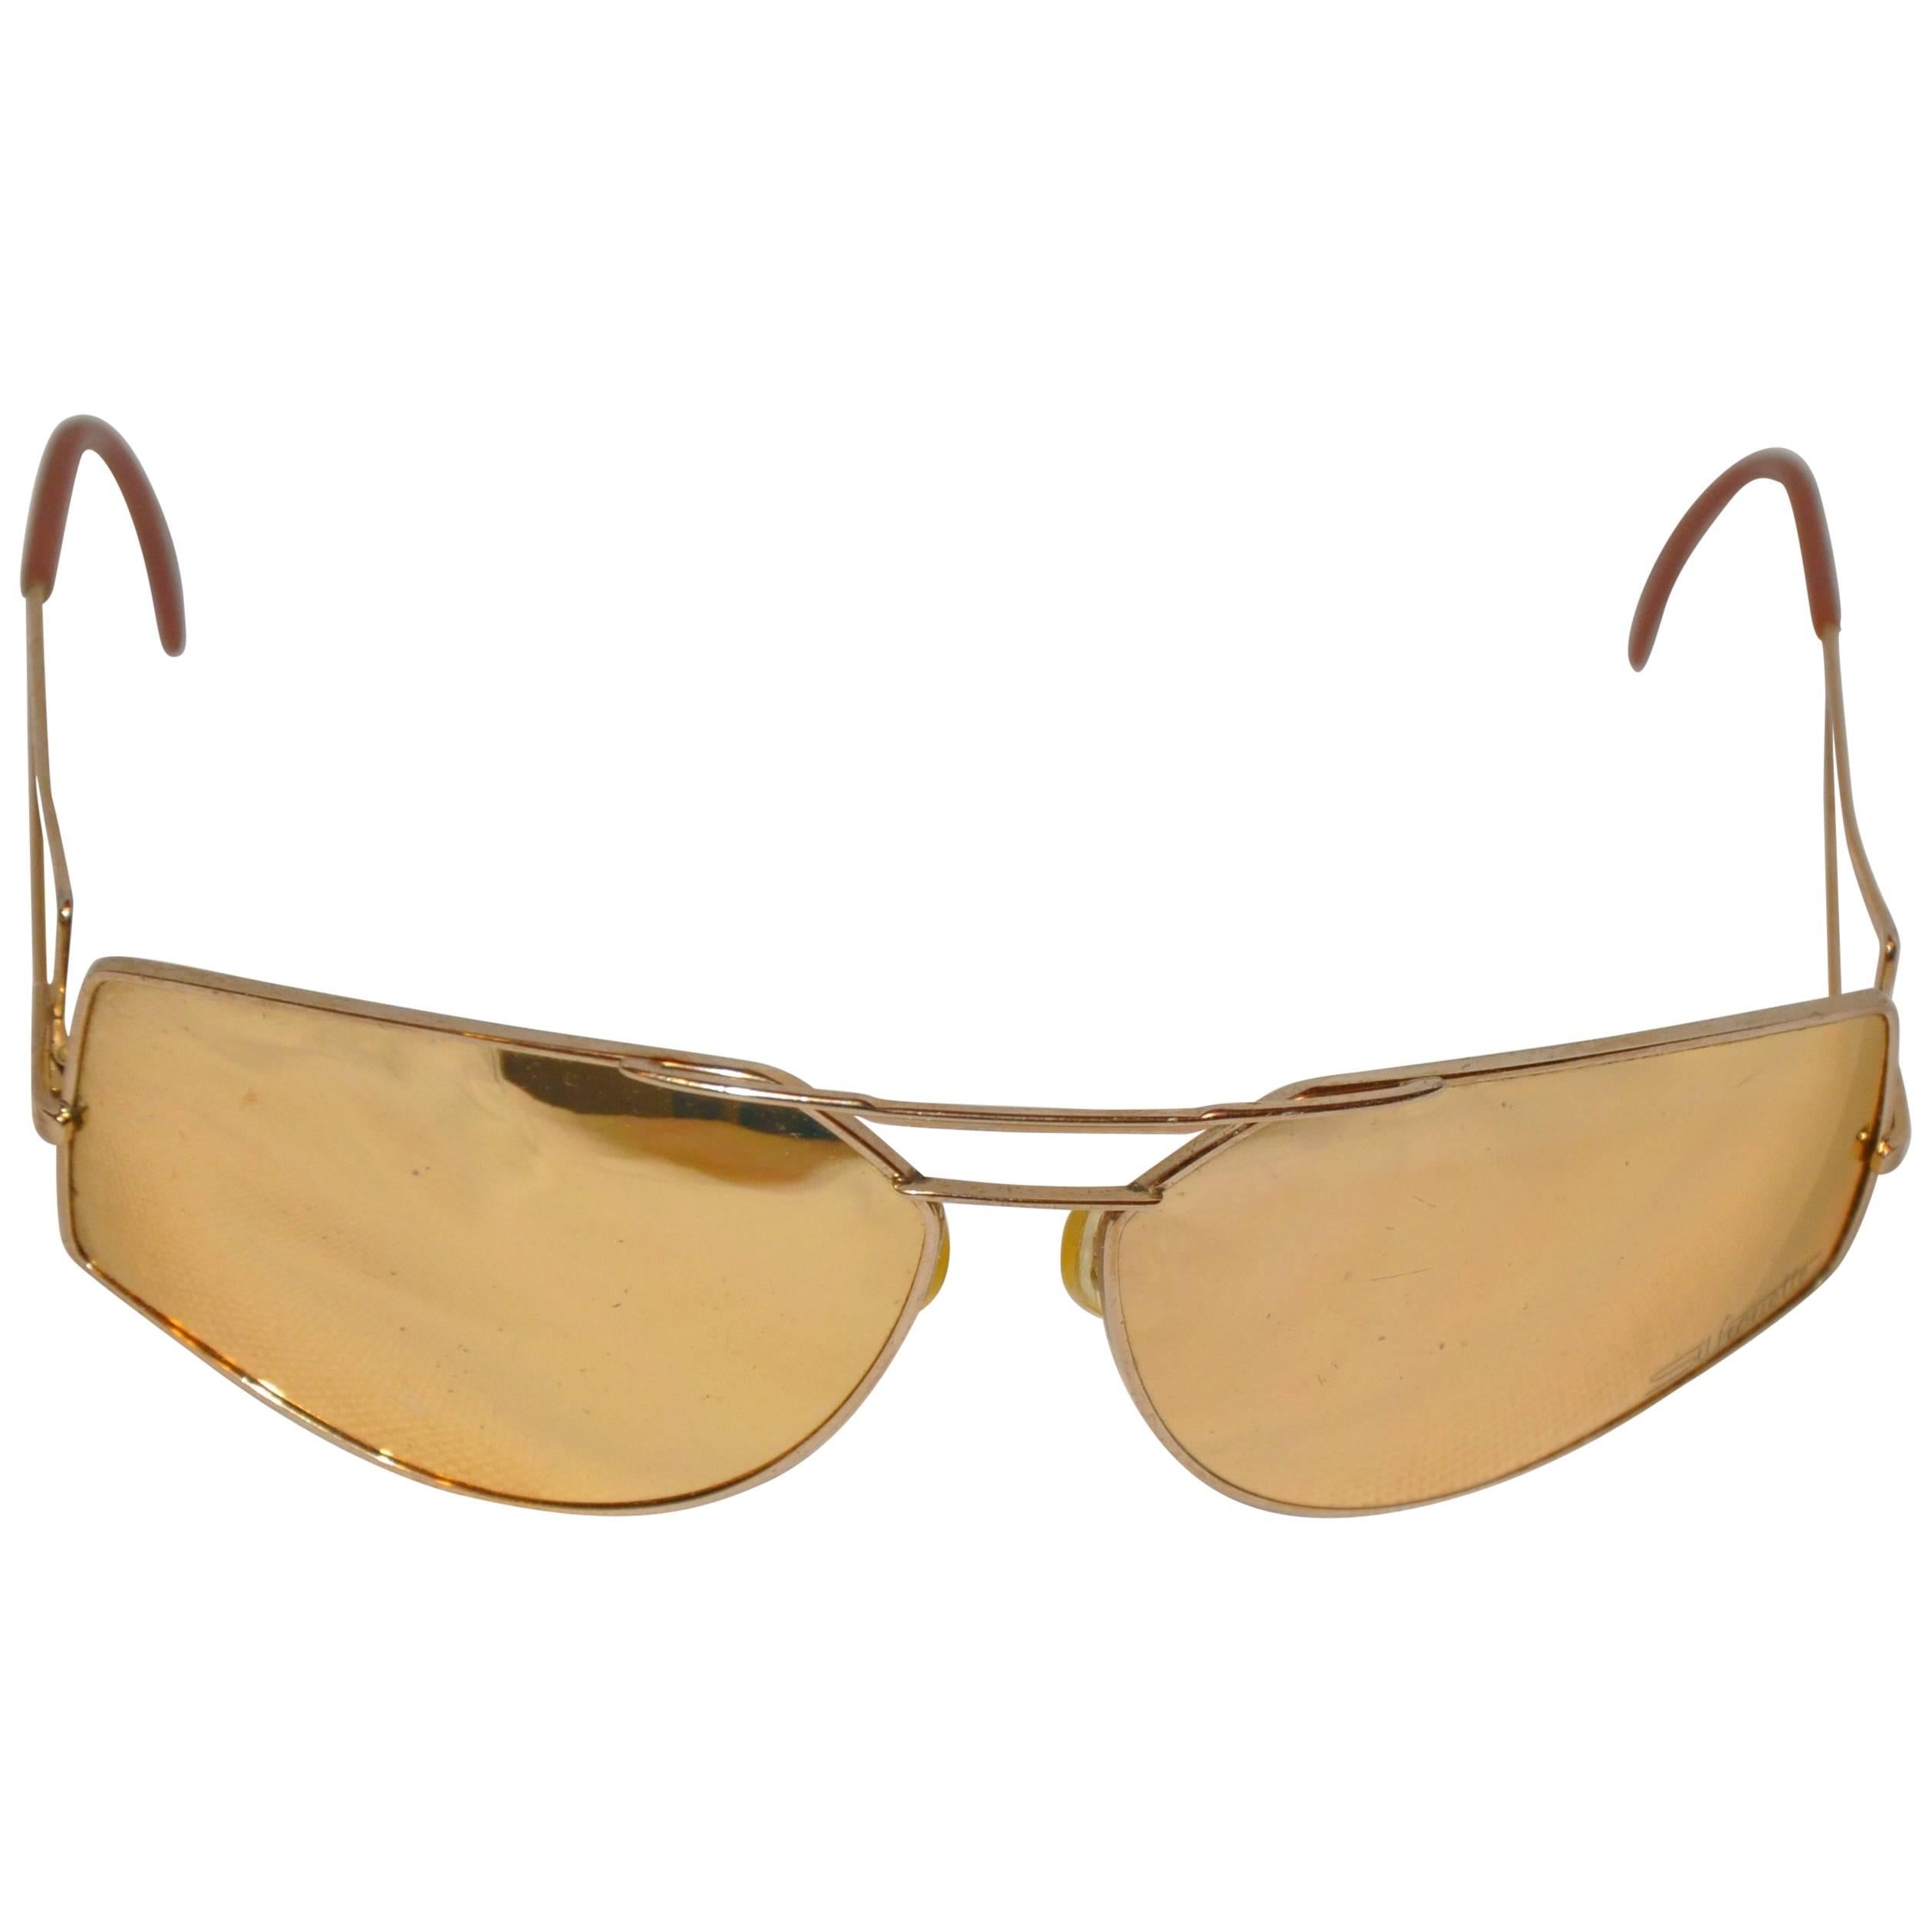 Silhouette dorée accentuée de matériel doré avec lunettes de soleil miroir en vente